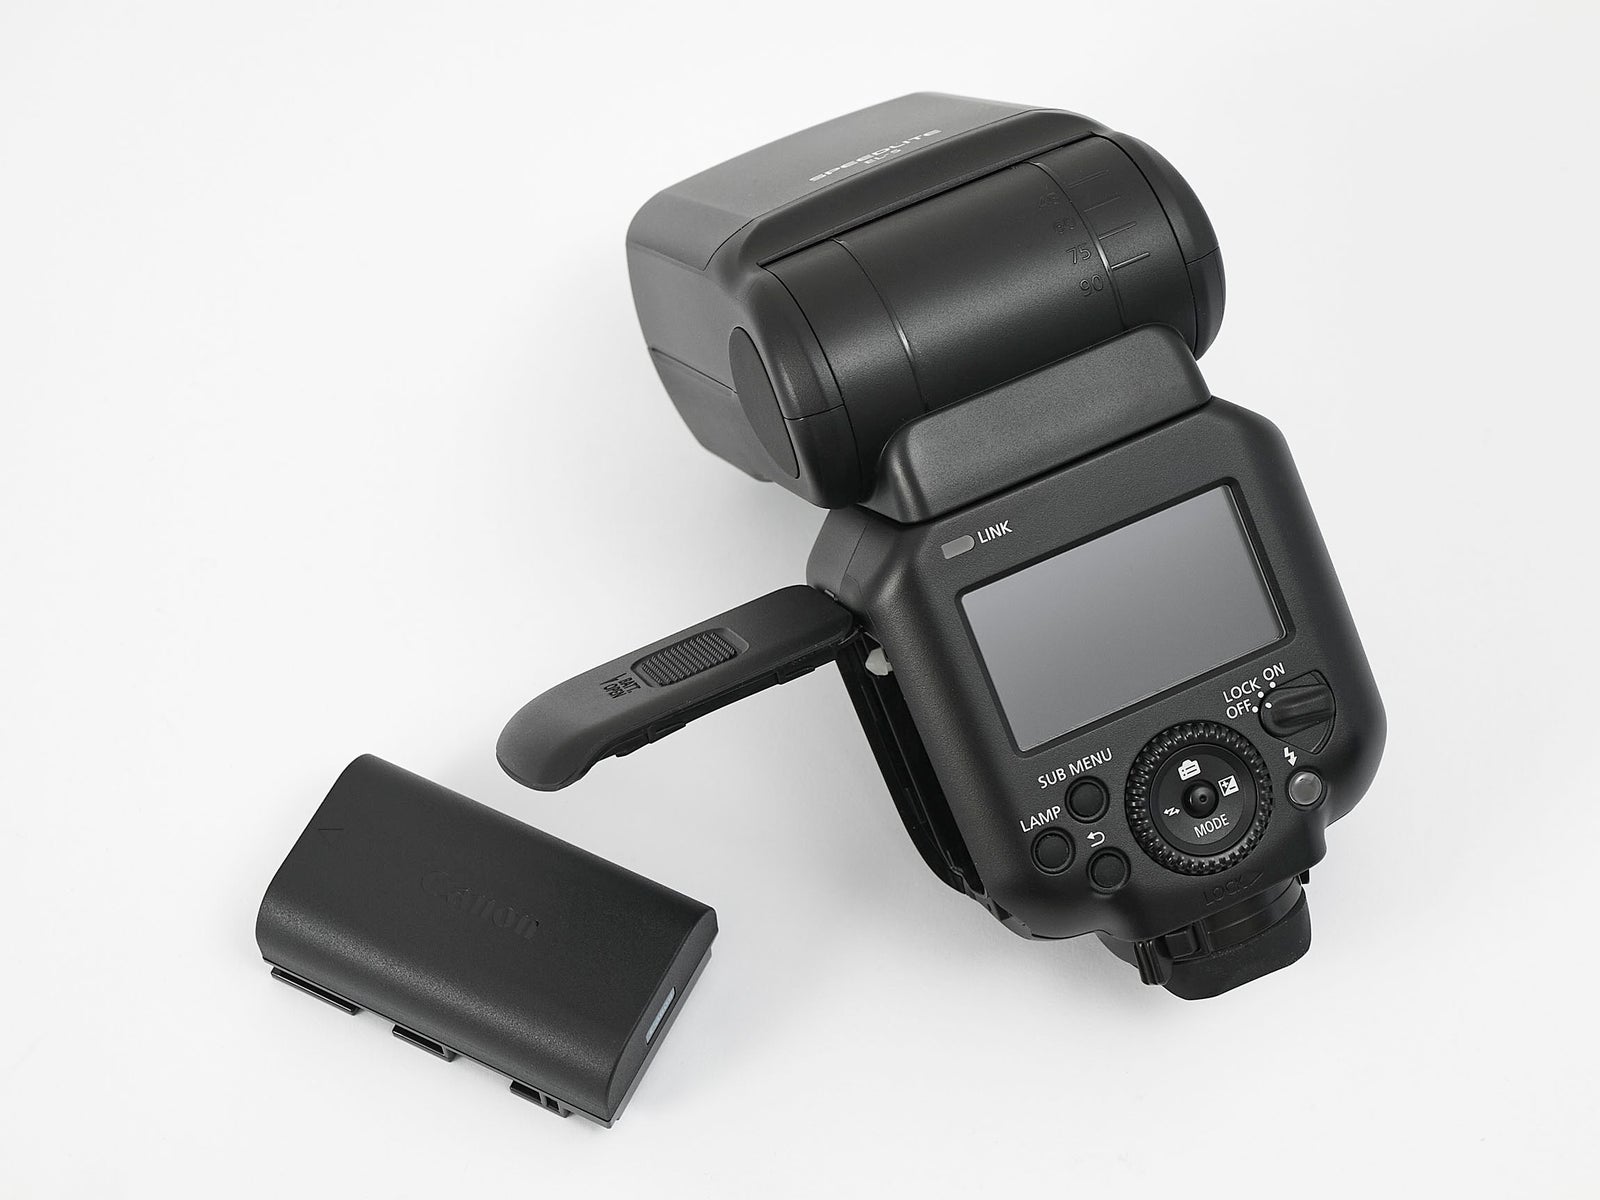 Canon, EL-5 flash m. ST-E10 transmitter, Perfekt